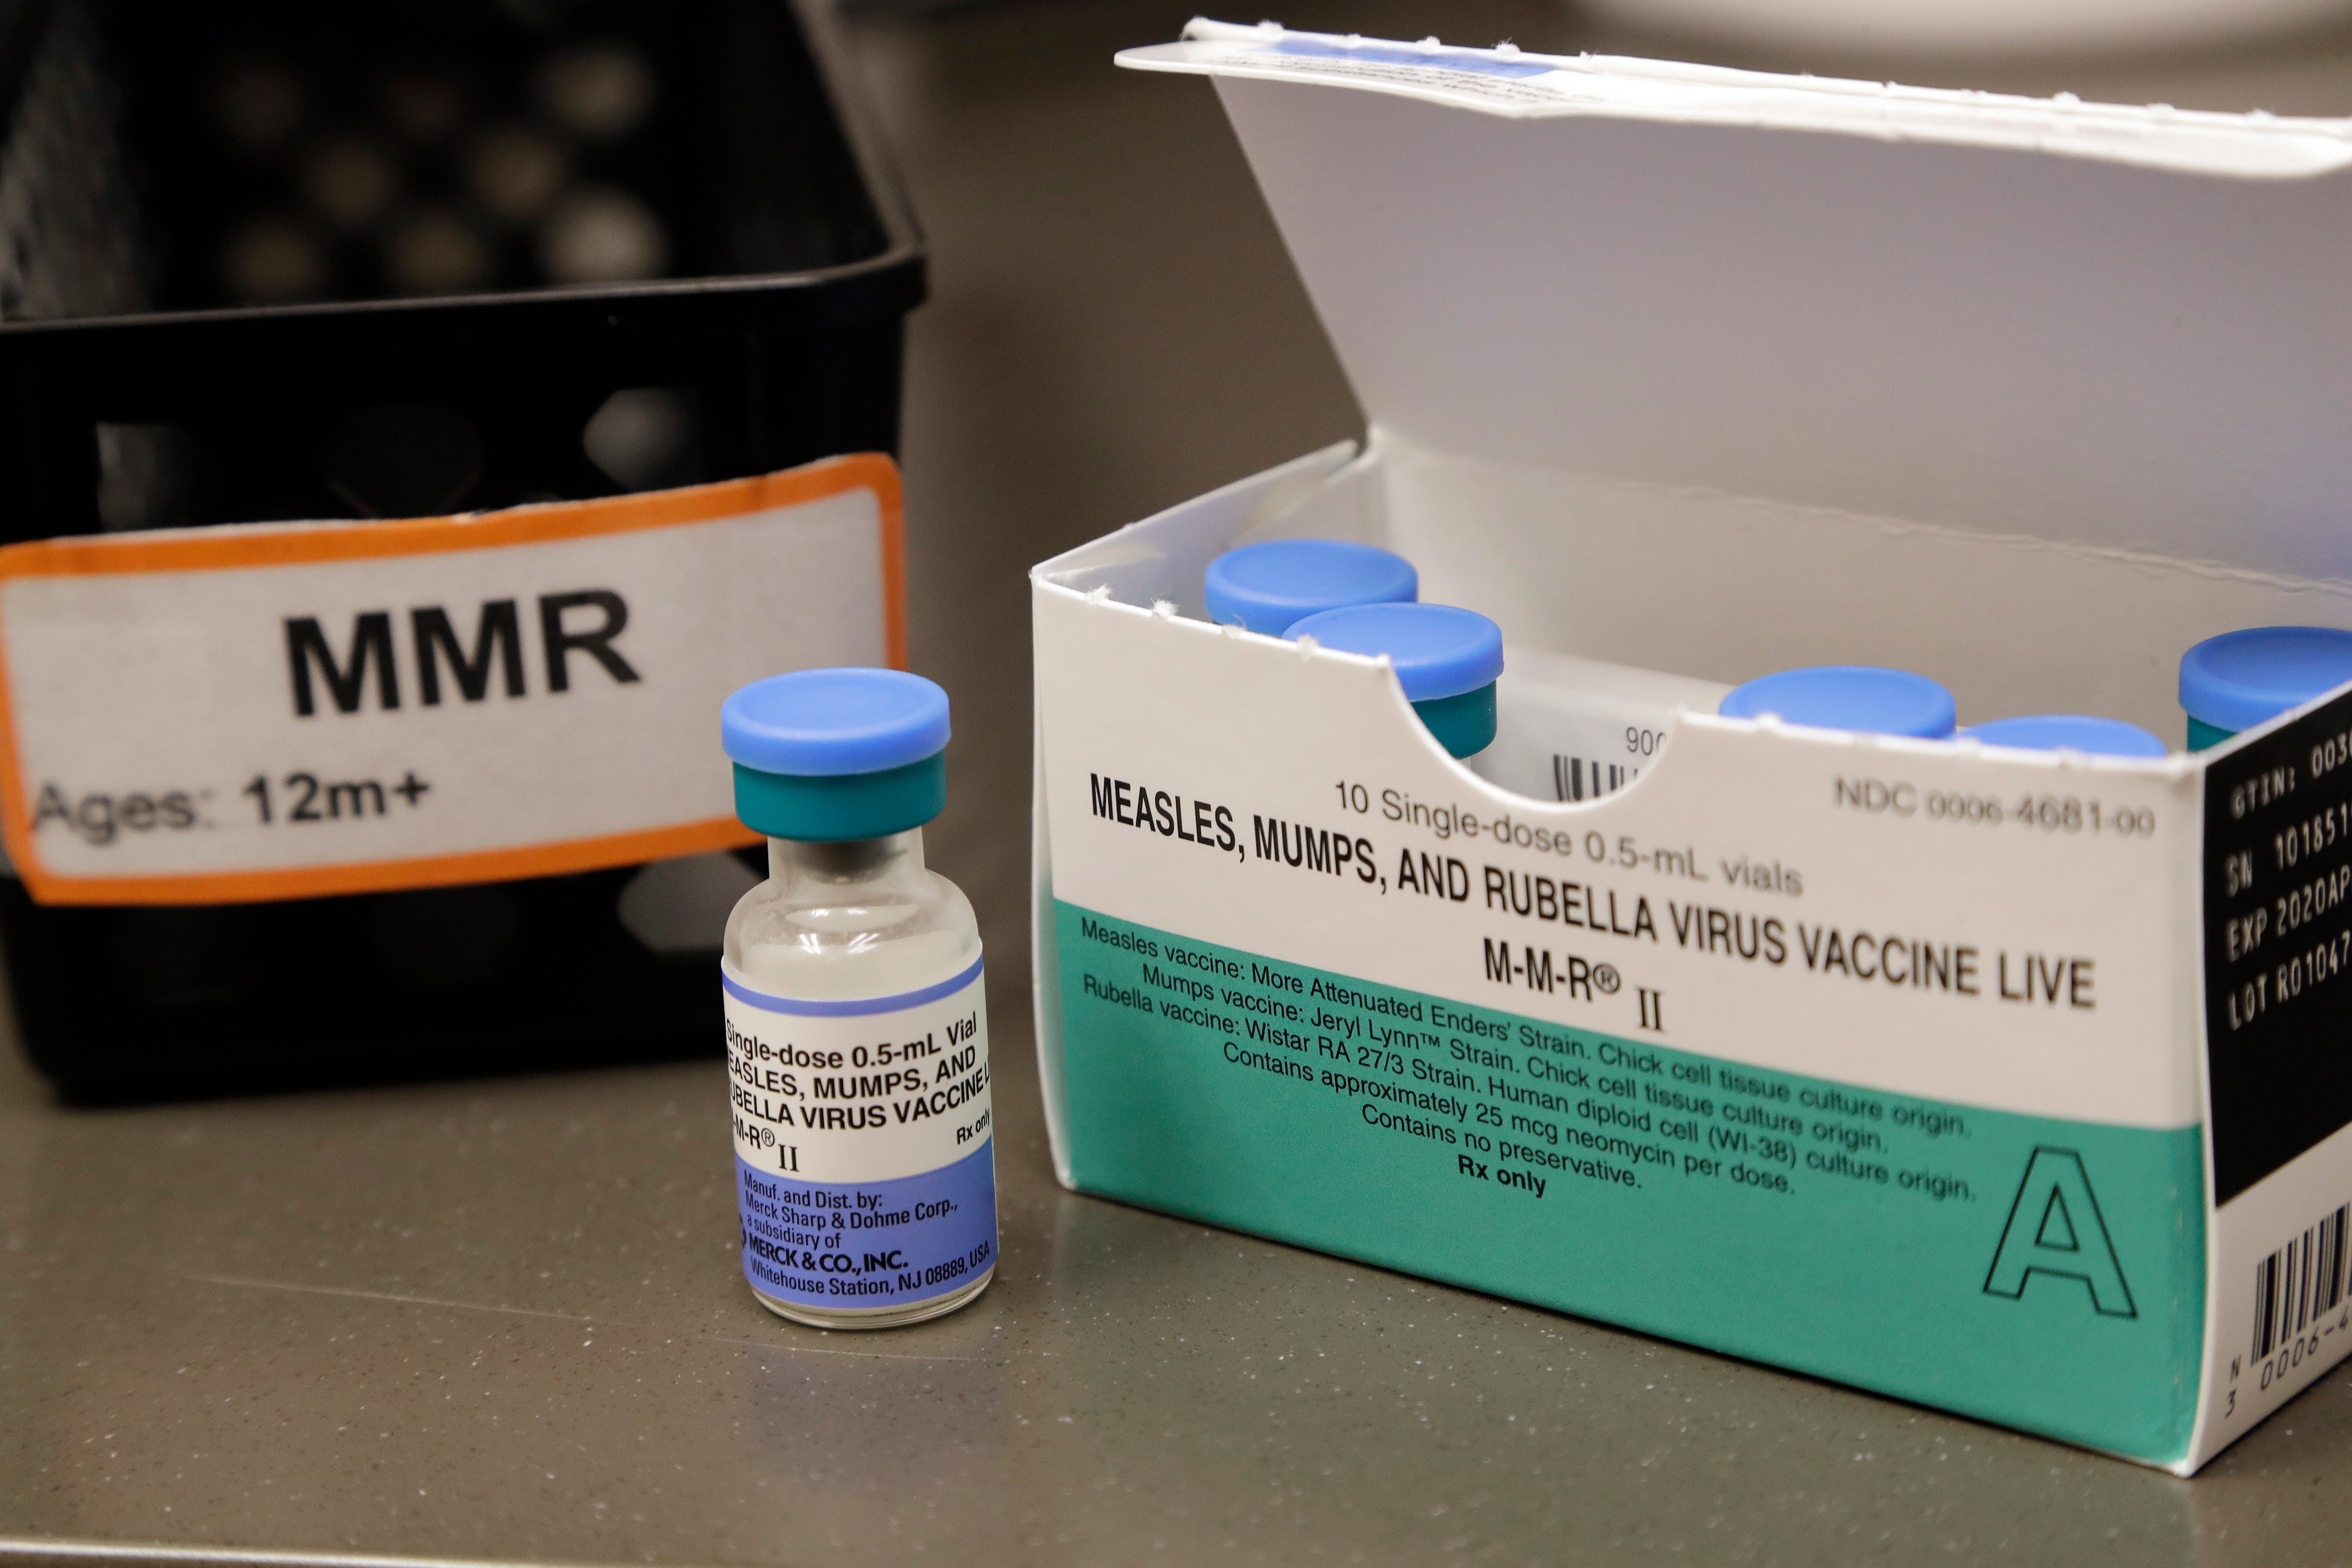 An MMR vaccine